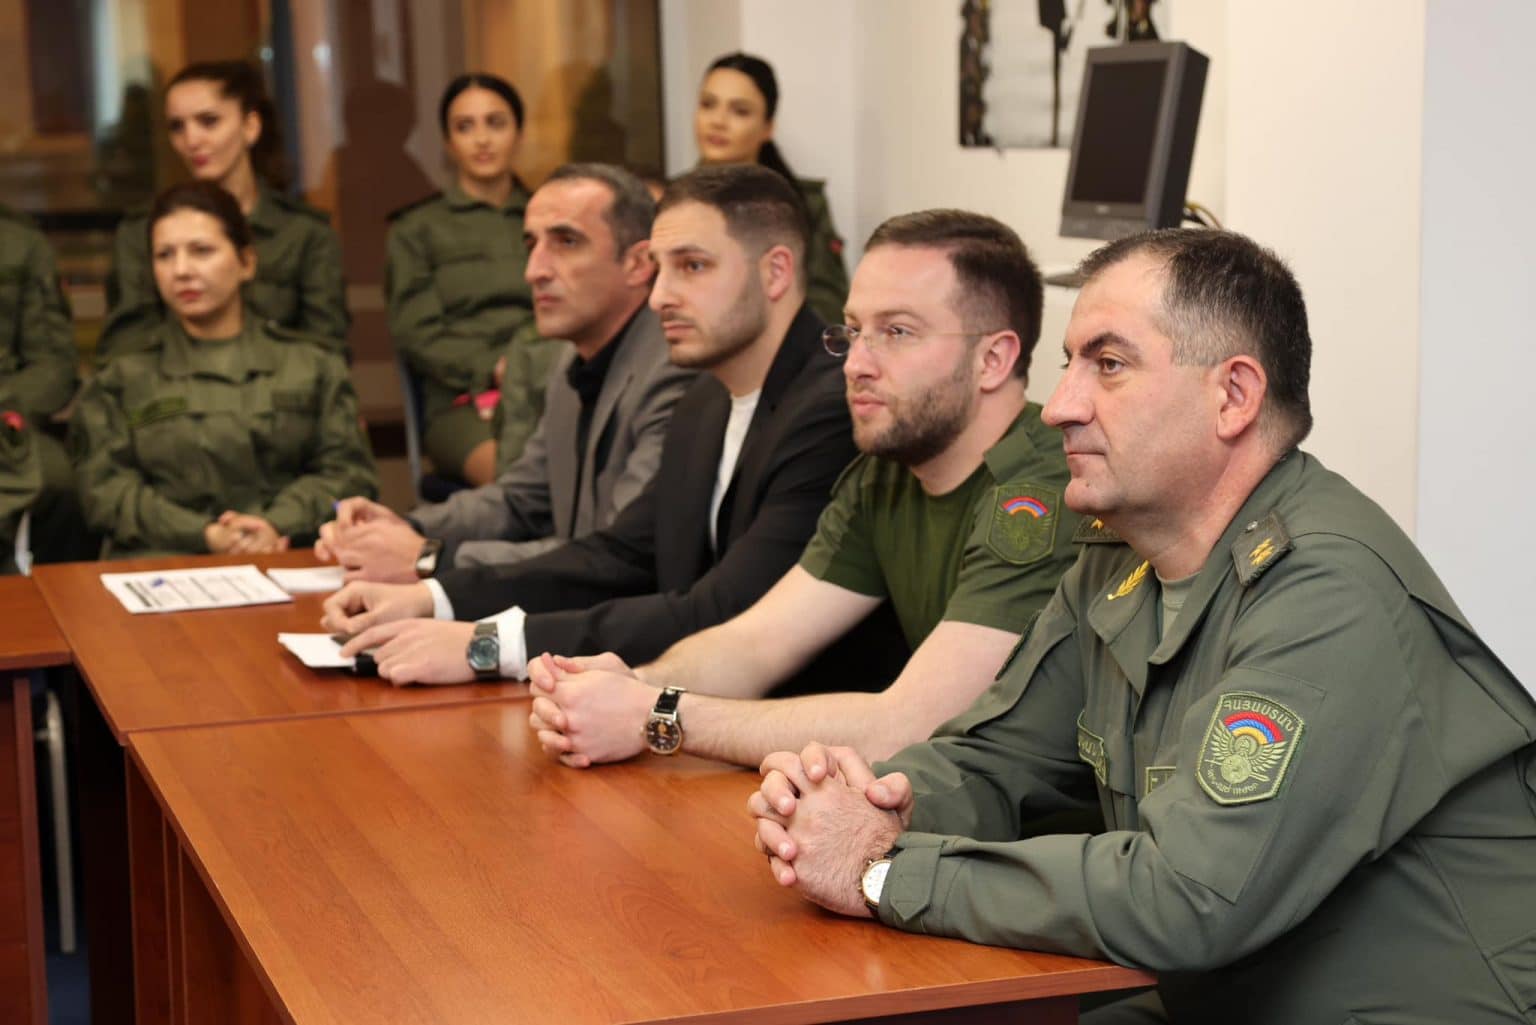 ԱՄՆ հրահանգիչների խումբը վարժանքներ կիրականացնի «Զինուժ Մեդիա»-ի ծառայողների հետ